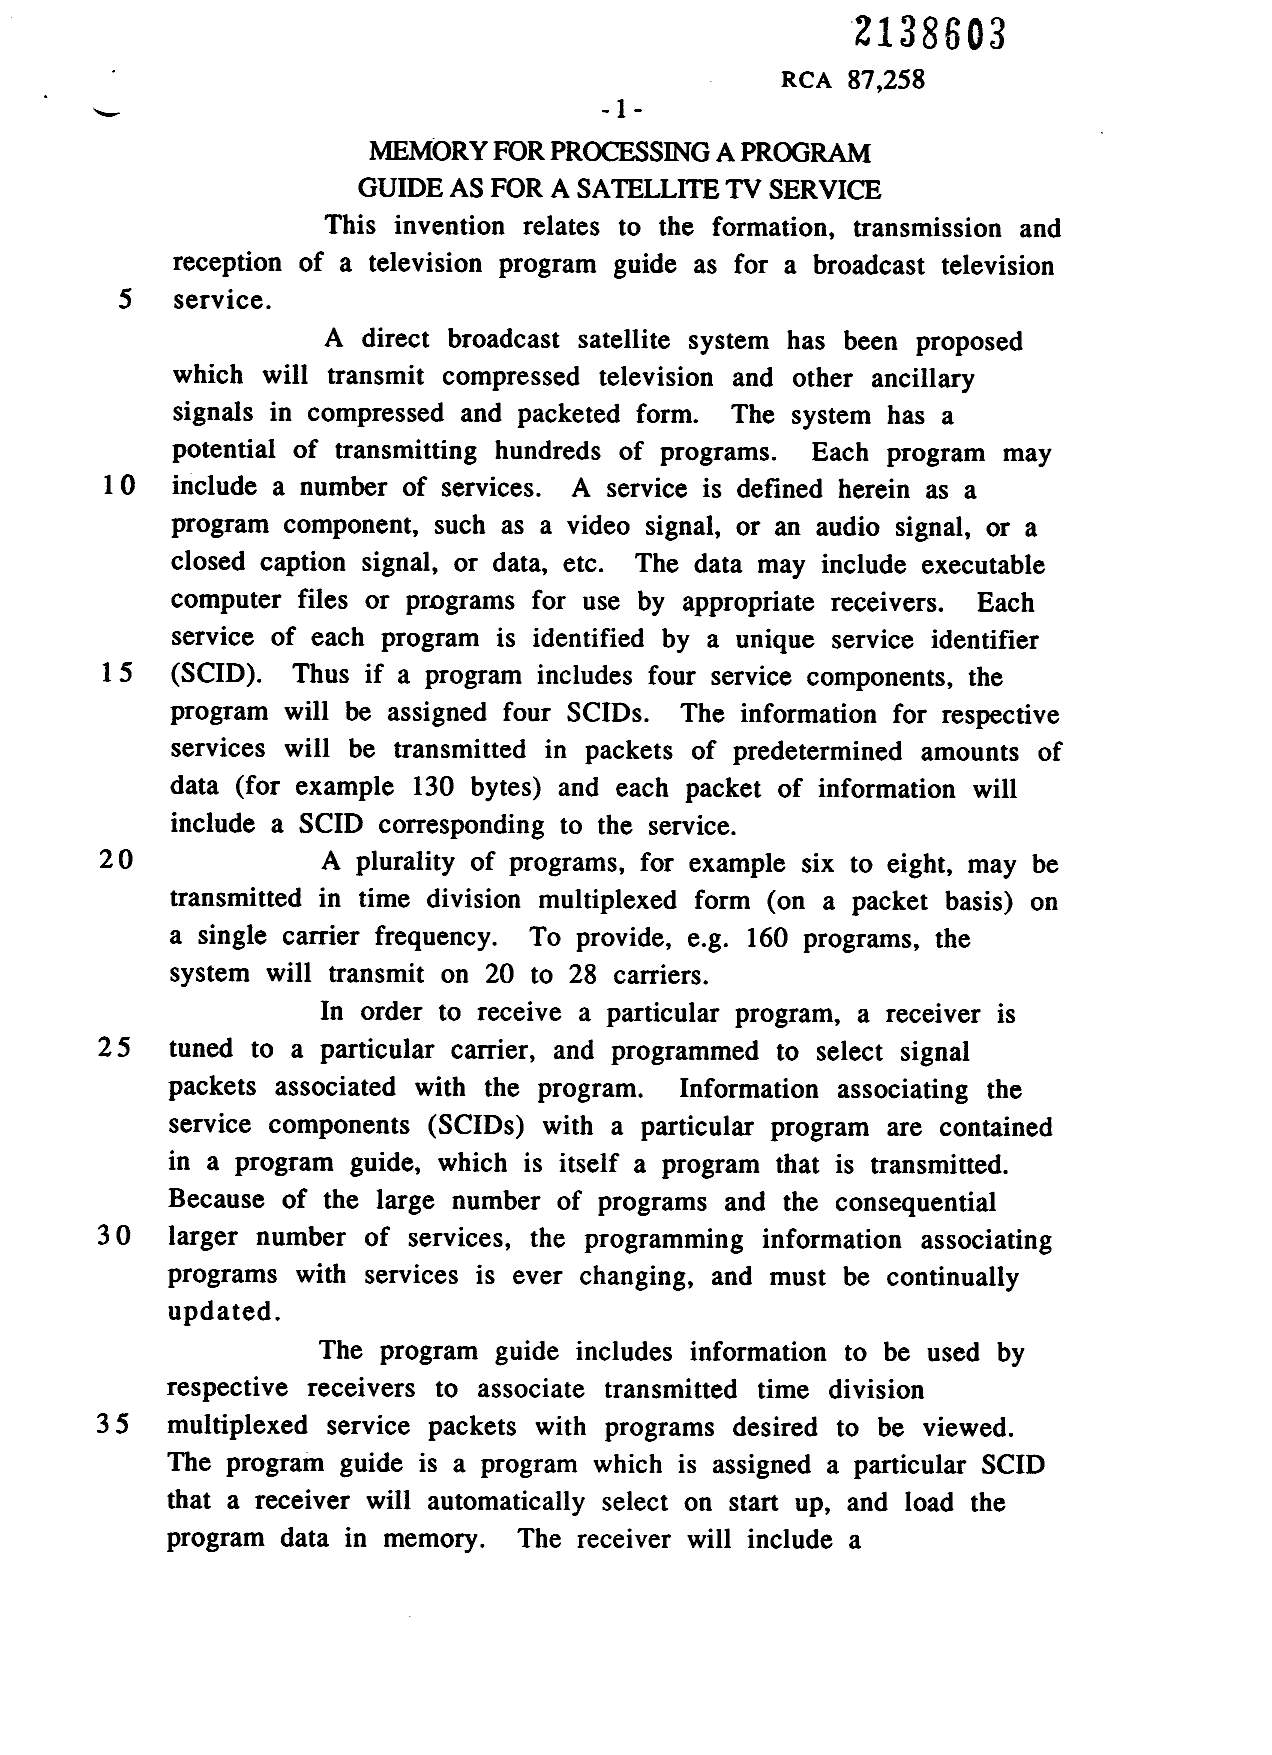 Canadian Patent Document 2138603. Description 19950706. Image 1 of 14